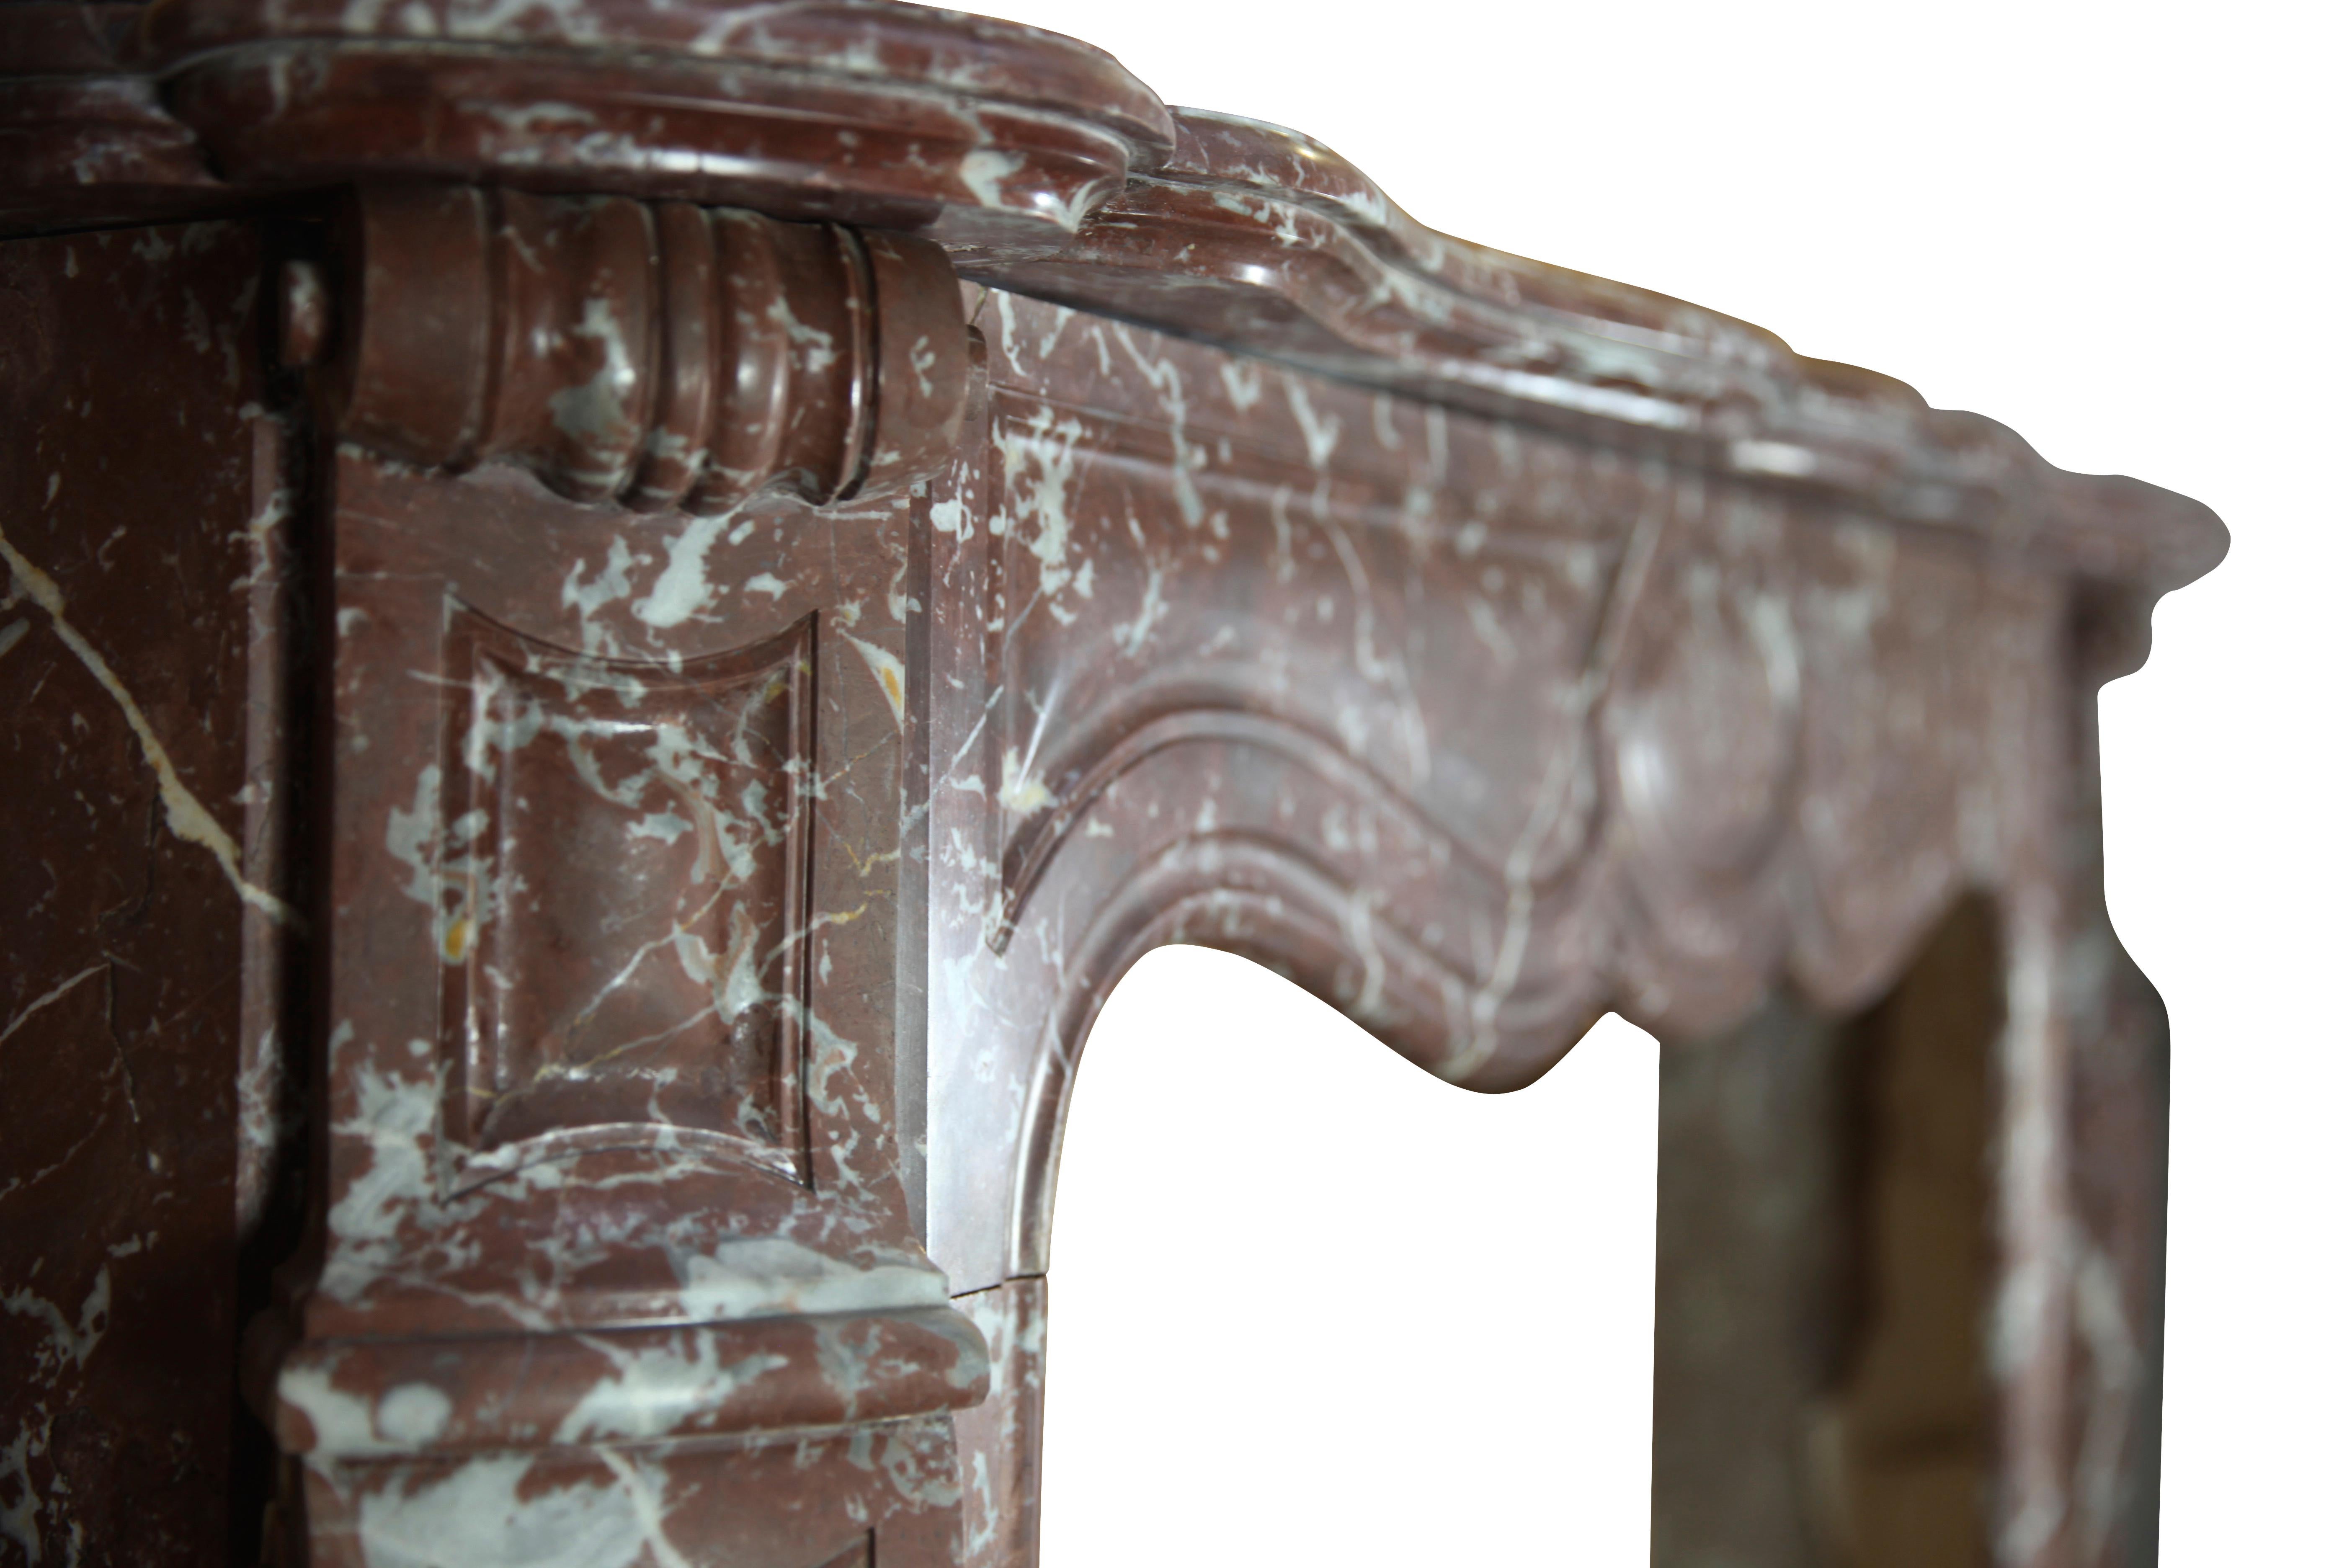 Ce manteau de cheminée vintage de style Pompadour a été réalisé en marbre belge brun. Il date du XIXe siècle et a été installé dans un appartement bruxellois. 
Mesures : 
142 cm Largeur extérieure 55,9 Inch
124 cm Hauteur extérieure 48,82